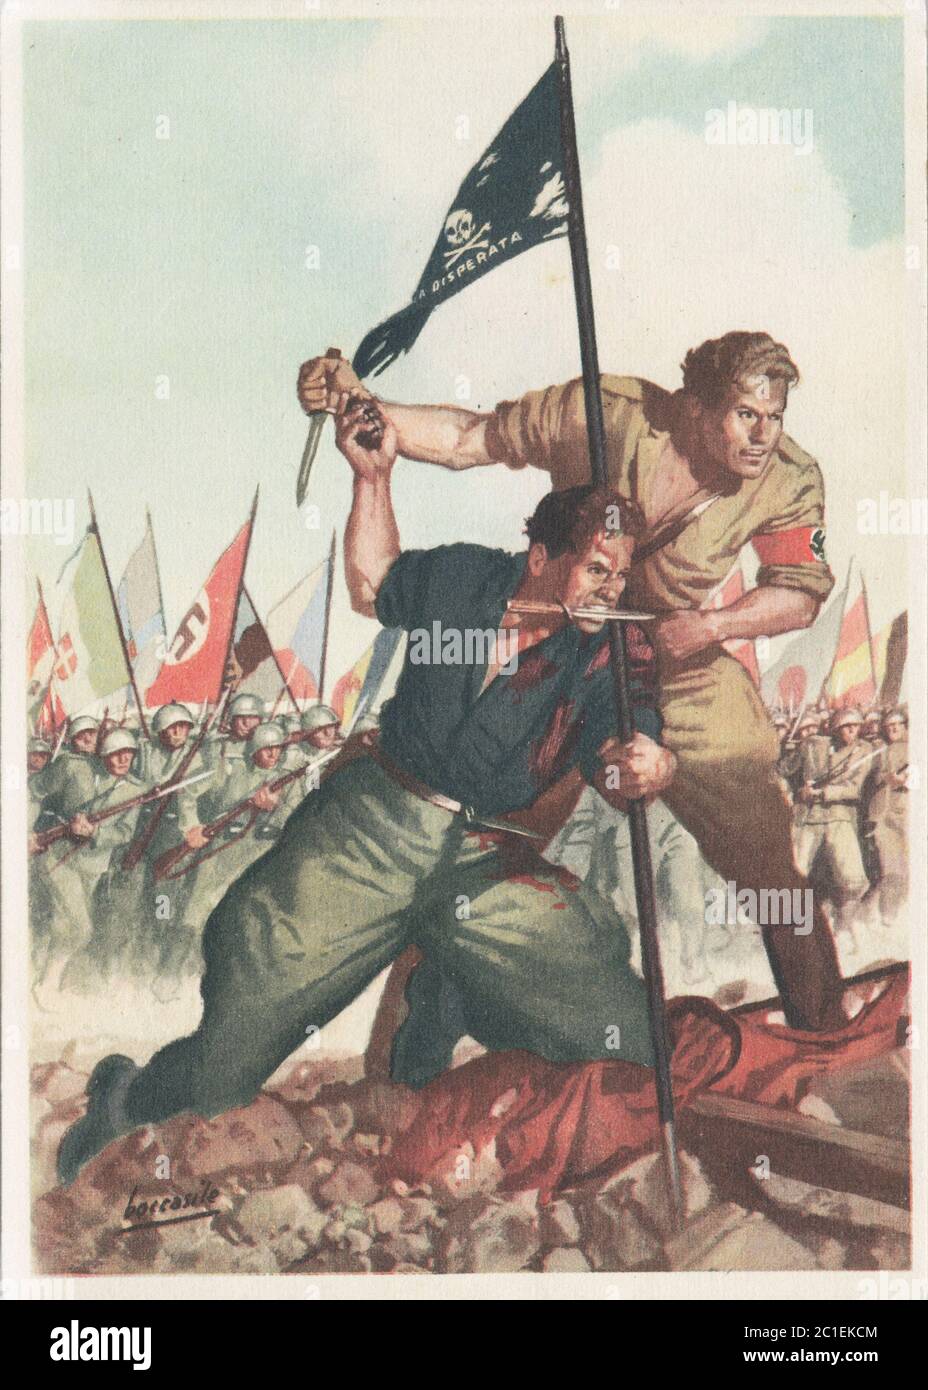 Carte postale italienne de la Fraternité des armes germano-italienne. 1941 Banque D'Images